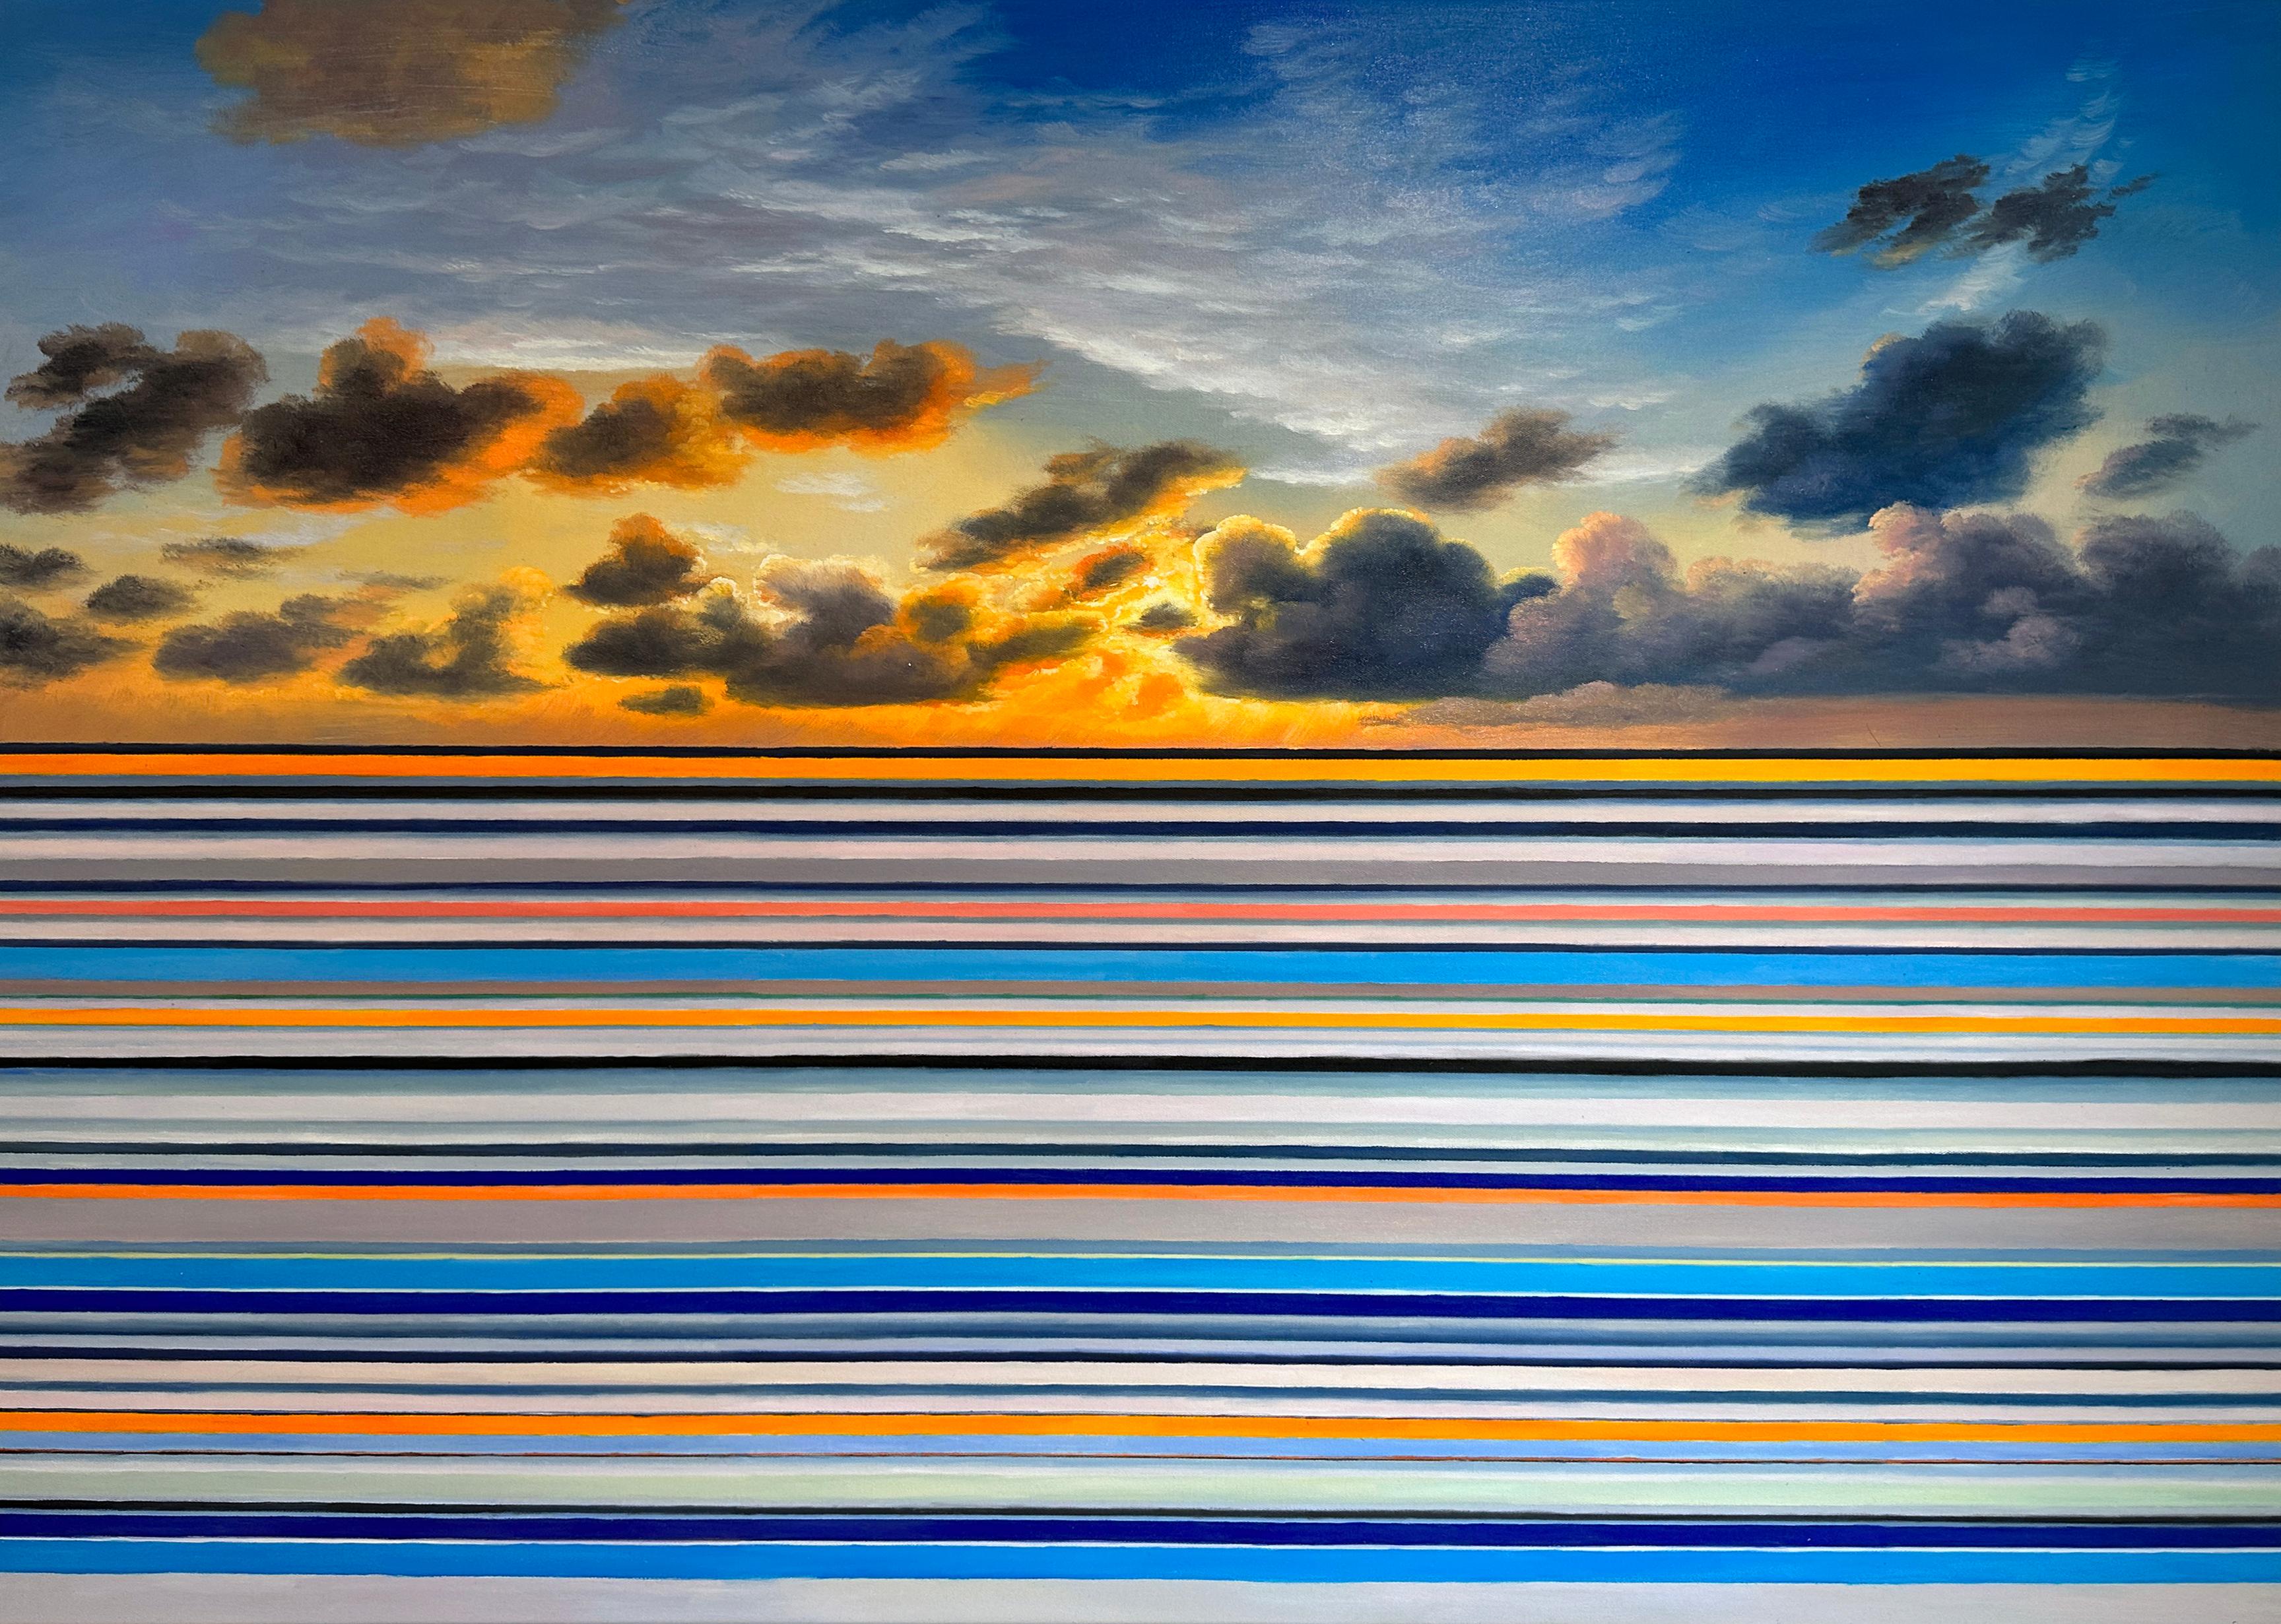 A Break in the Clouds von Kate Seaborne, gestreiftes Ölgemälde mit Meereslandschaft in Streifen